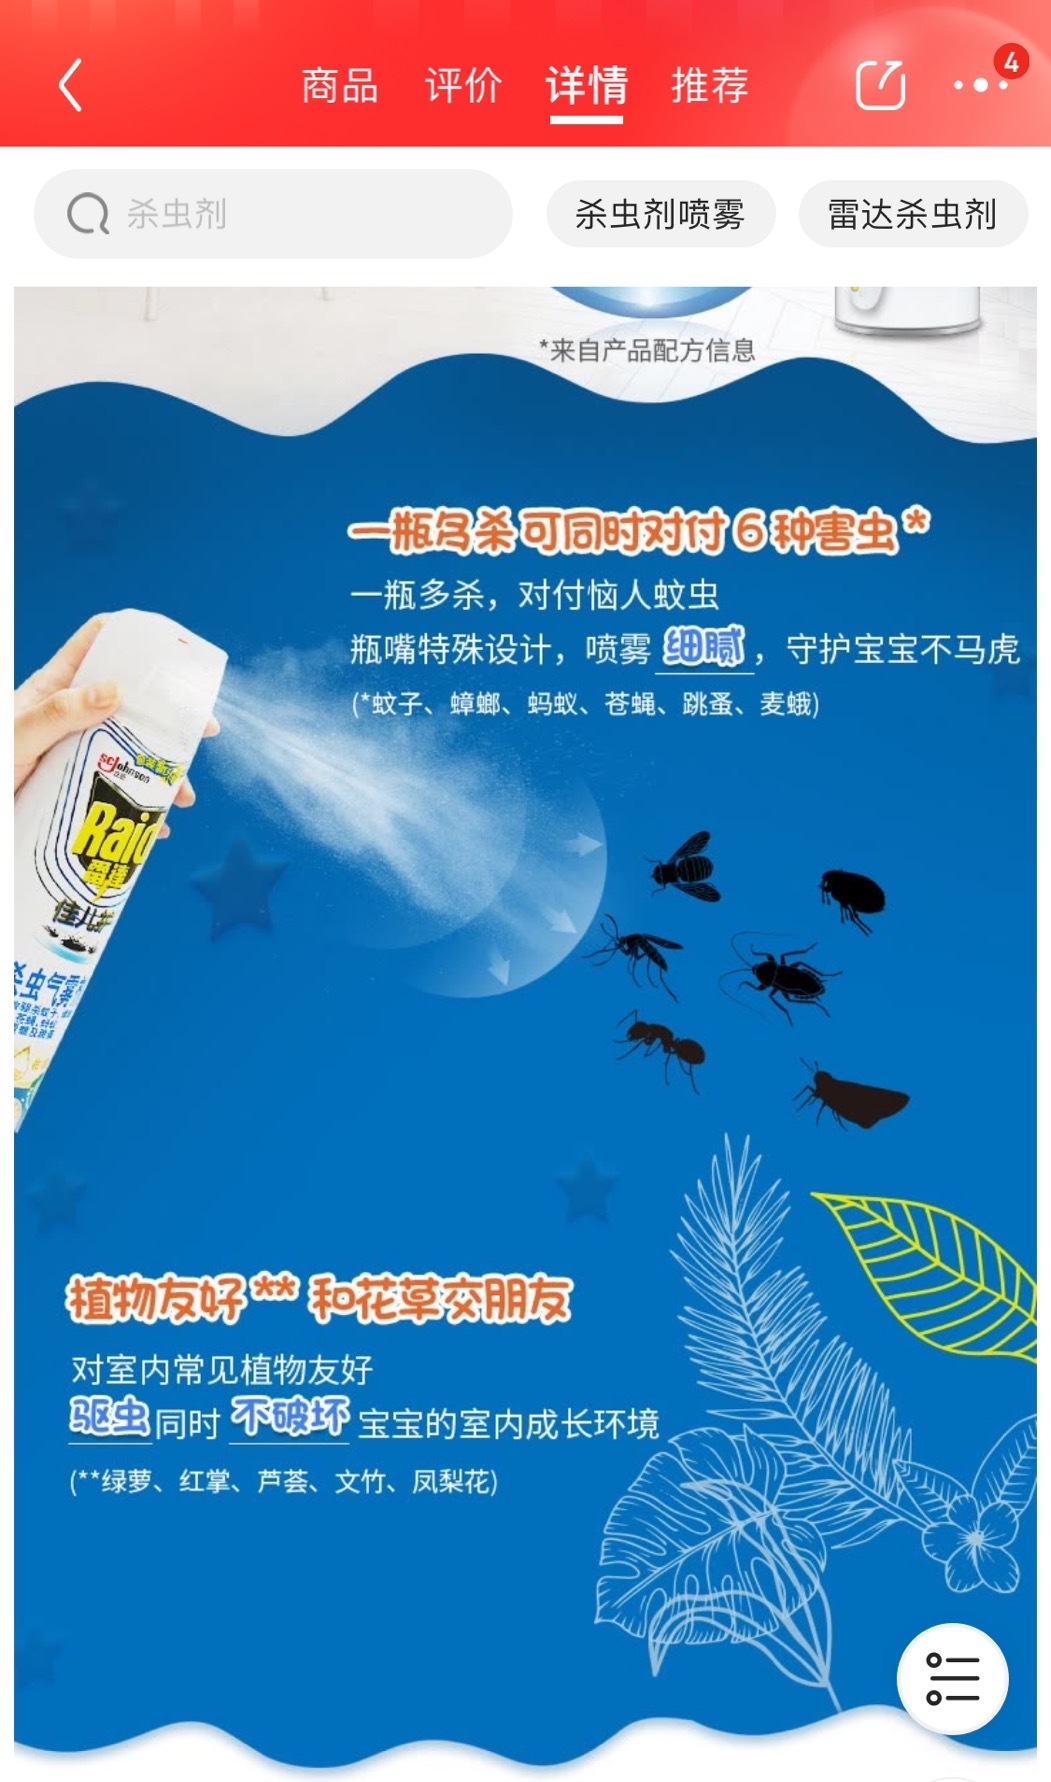 “上海庄臣旗下雷达杀虫剂“发布未经审查的农药产品广告”被处罚 曾因虚假宣传多次被罚